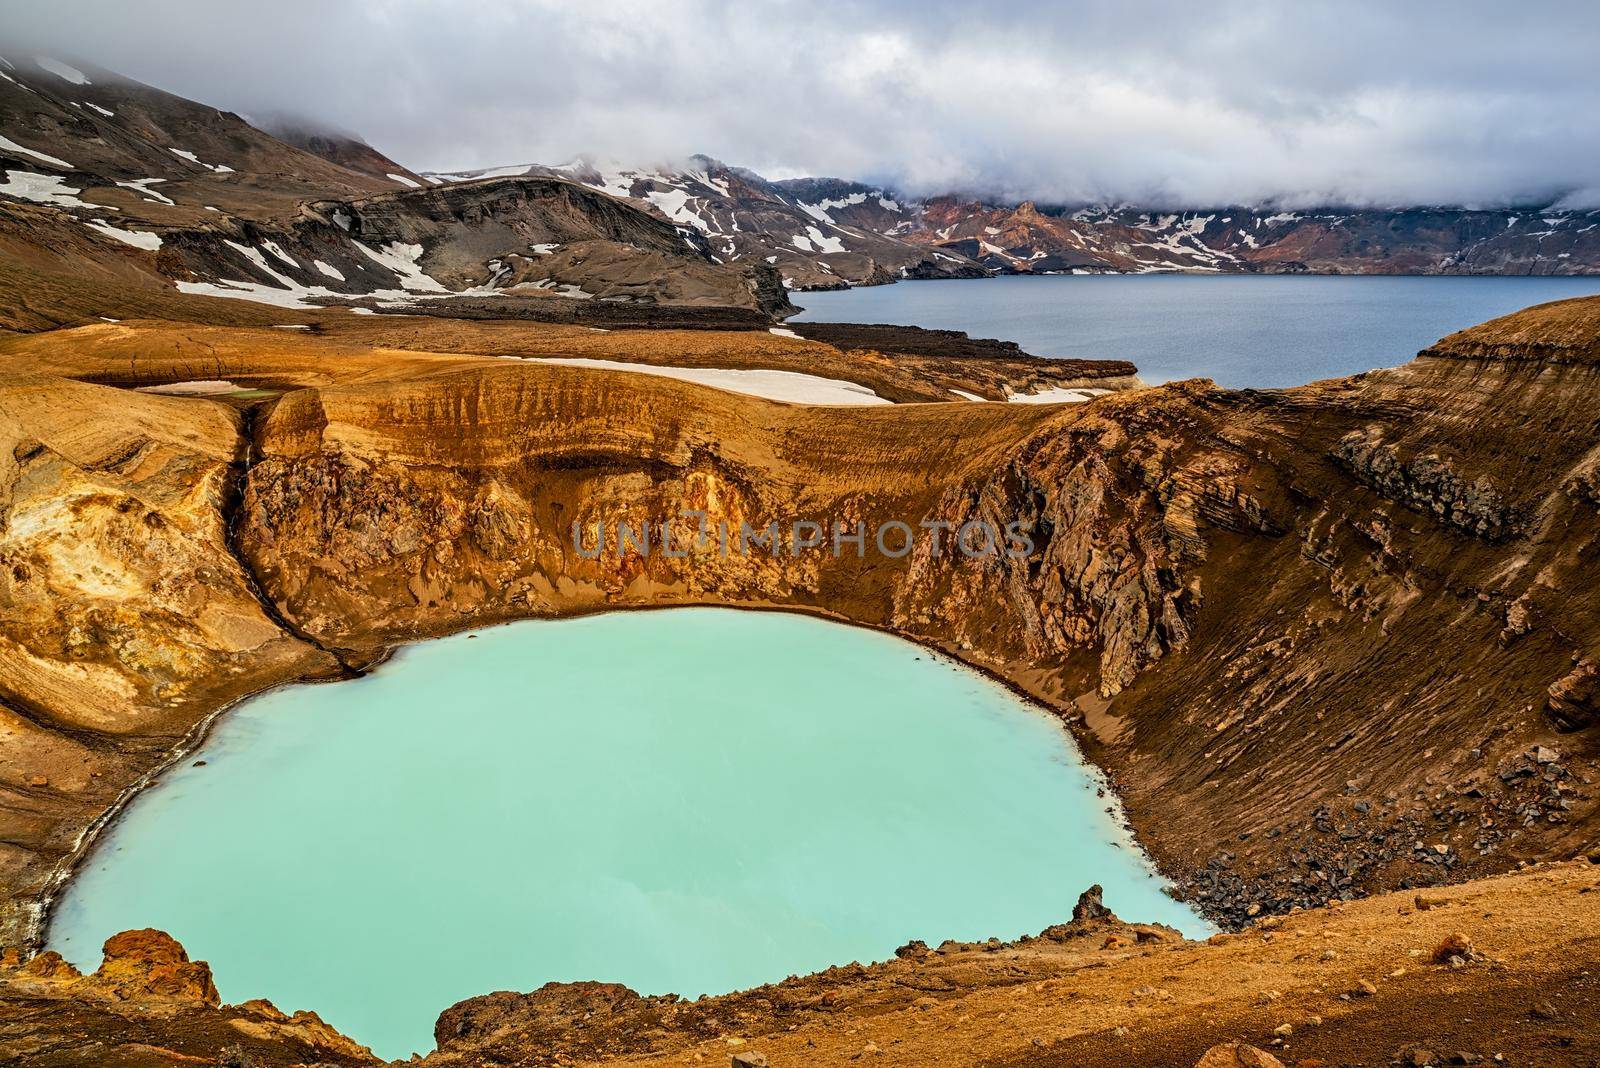 Mount Askja lake and geothermal lake, Iceland by LuigiMorbidelli